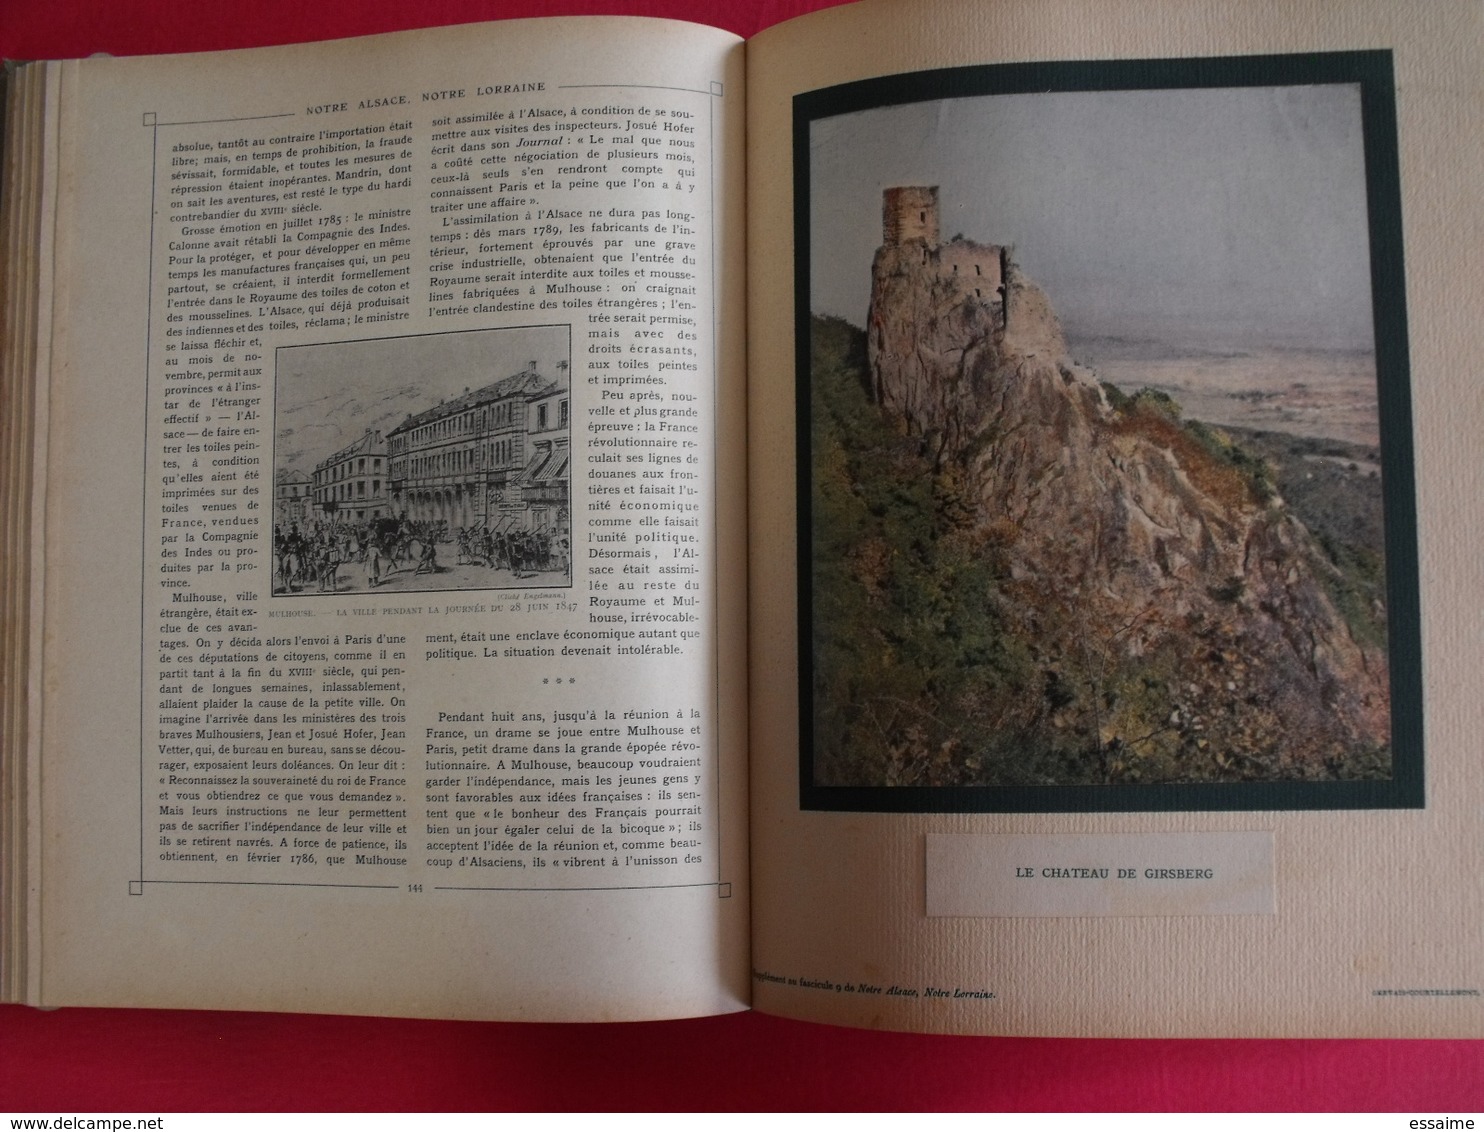 notre Alsace, notre Lorraine. Wetterlé, Fisher. tome 1. édition française illustrée. 1919